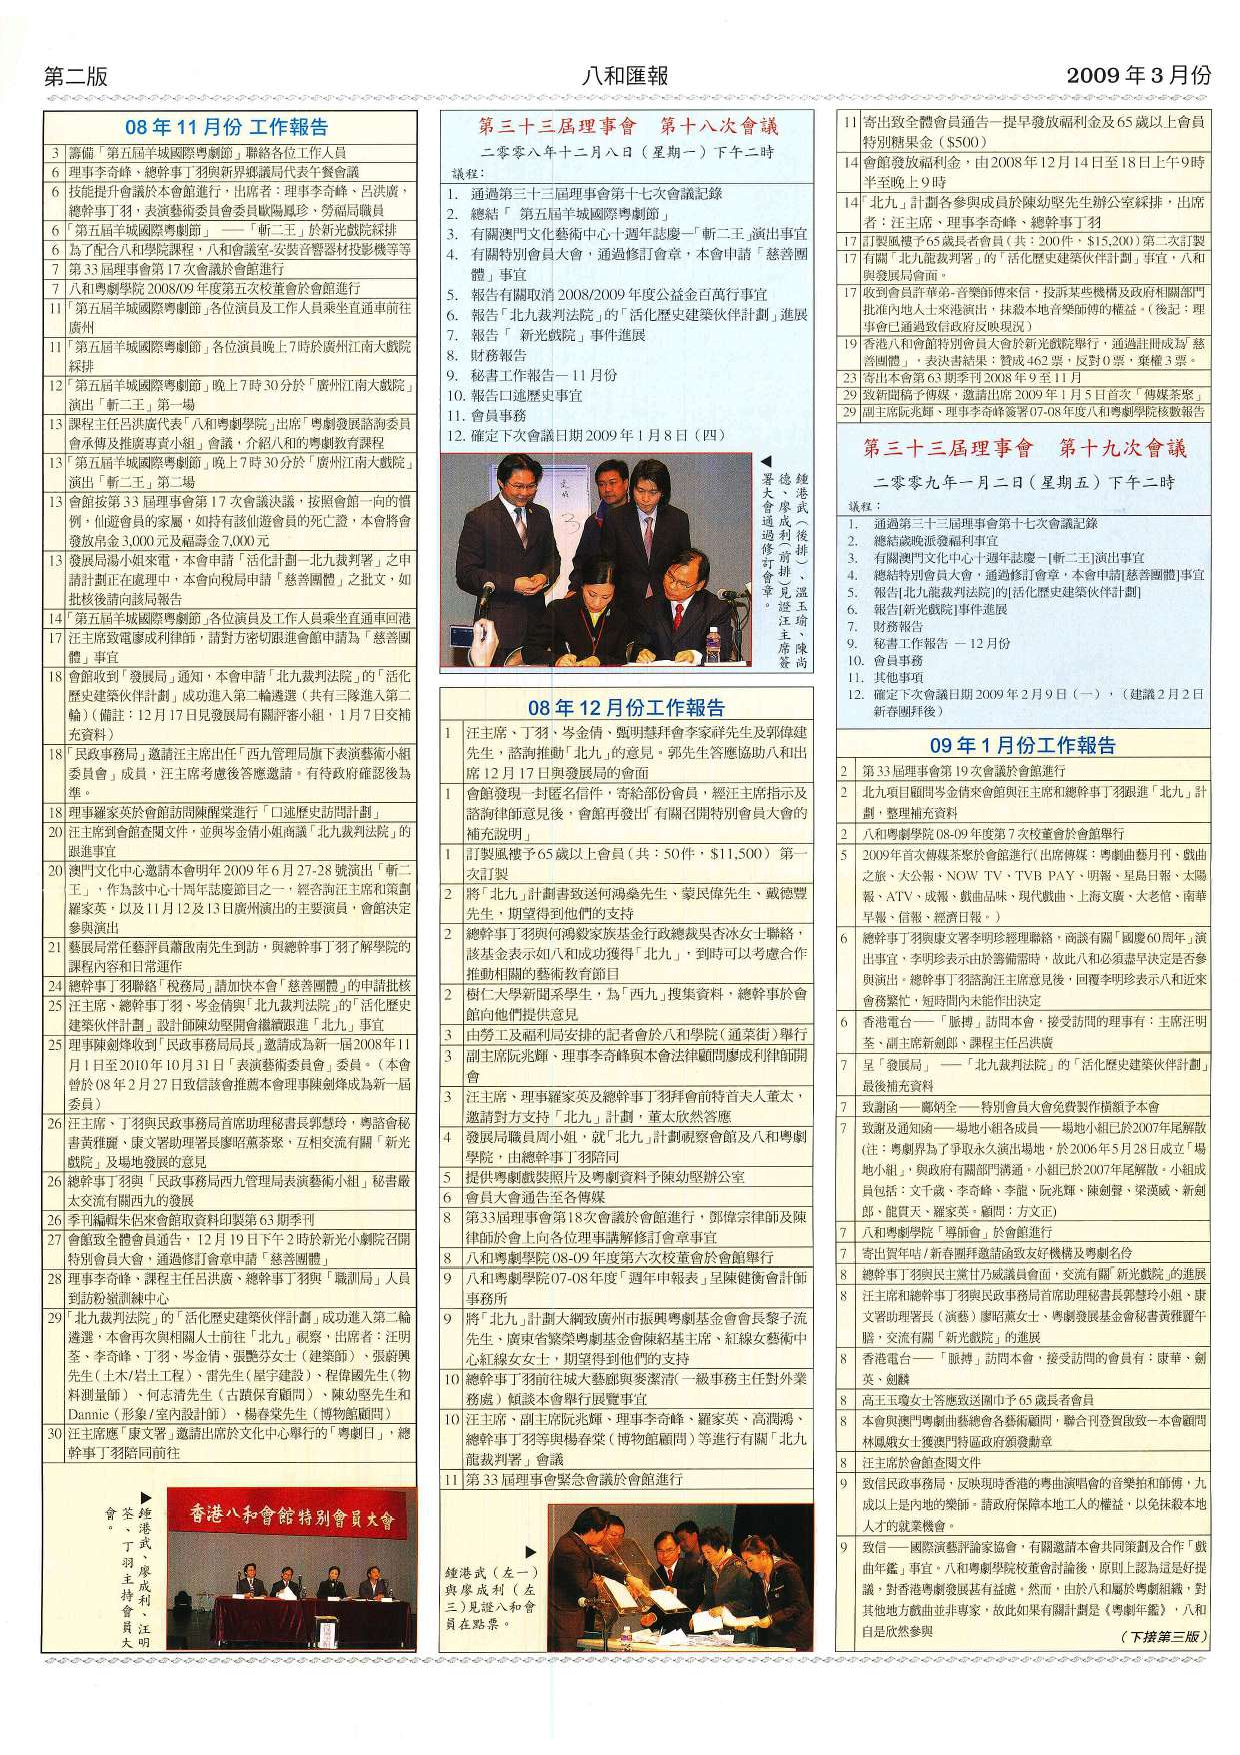 香港八和會館辦公室報告（2008年11月至2009年1月）及第三十三屆理事會第十八至十九次會議議程